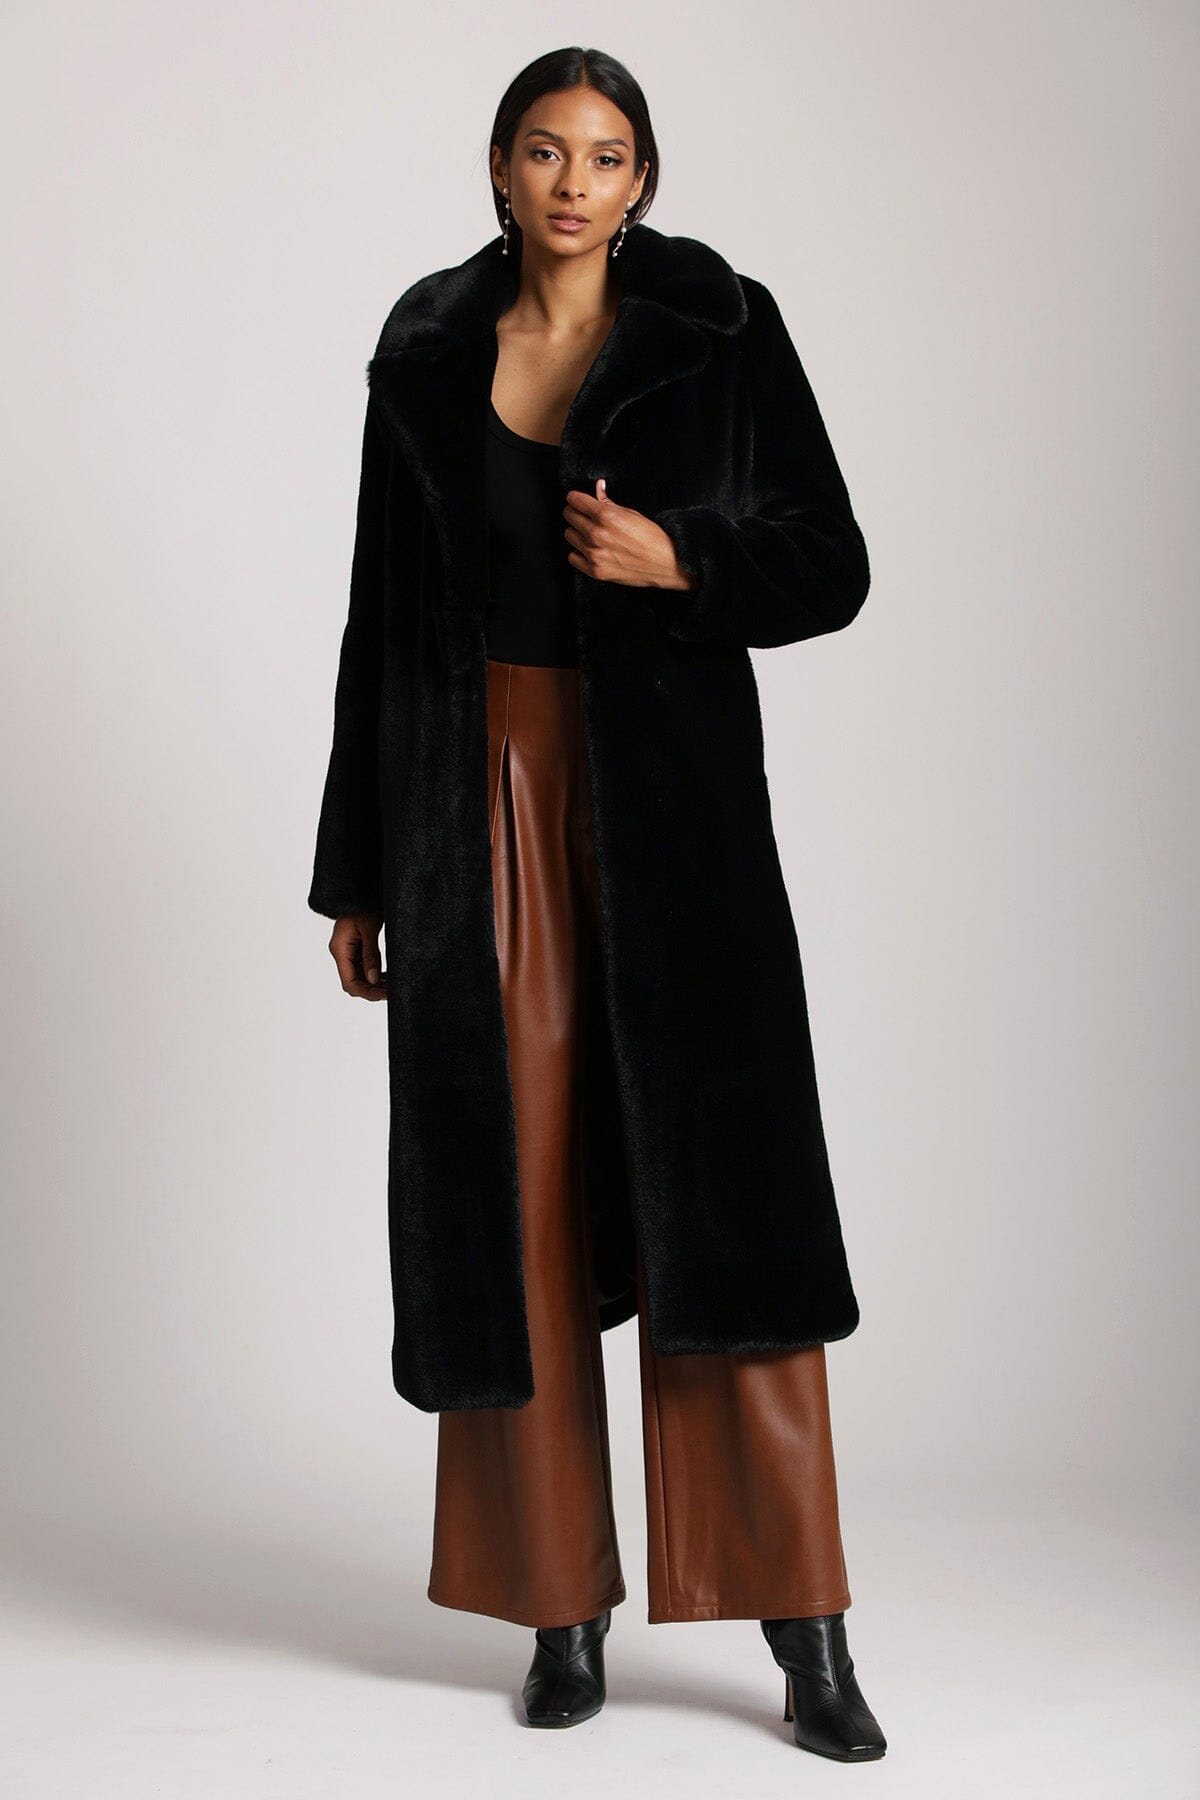 Black figure flattering luxurious long faux fur maxi coat jacket outerwear for ladies by Avec Les Filles